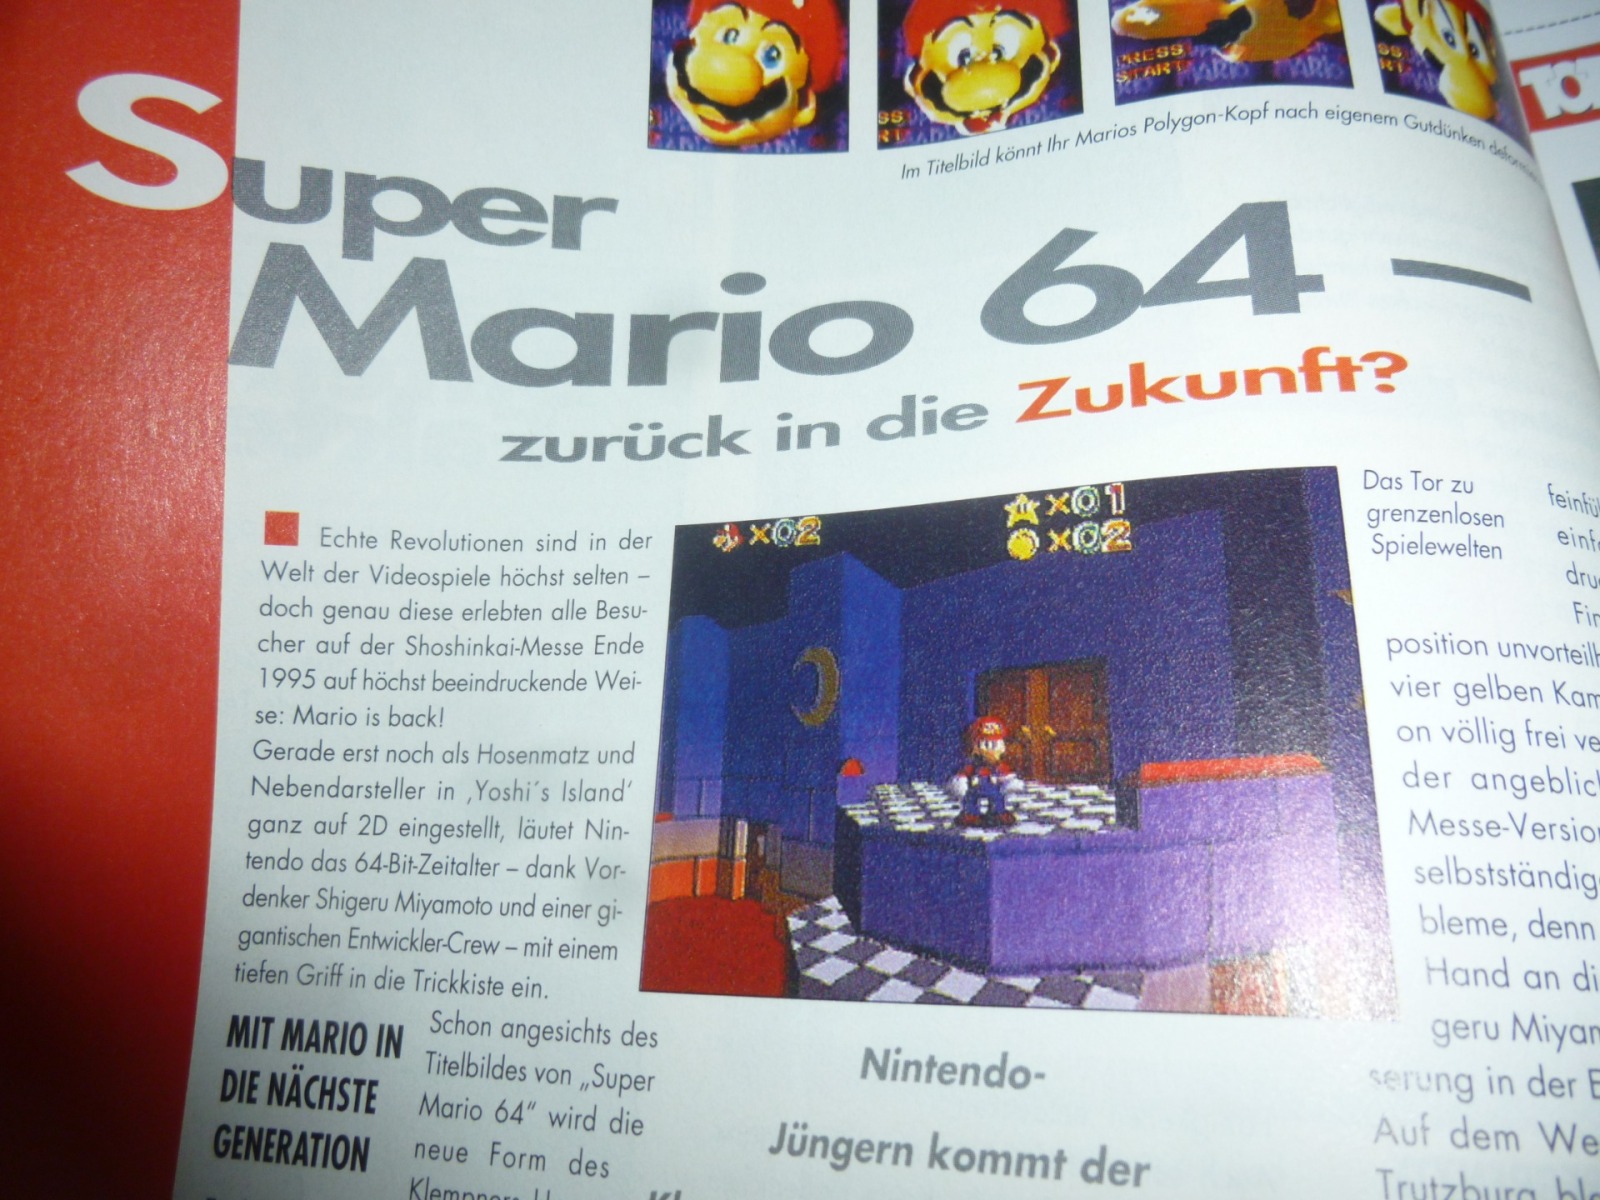 TOTAL Das unabhängige Magazin - 100 Nintendo - Ausgabe 2/96 1996 7